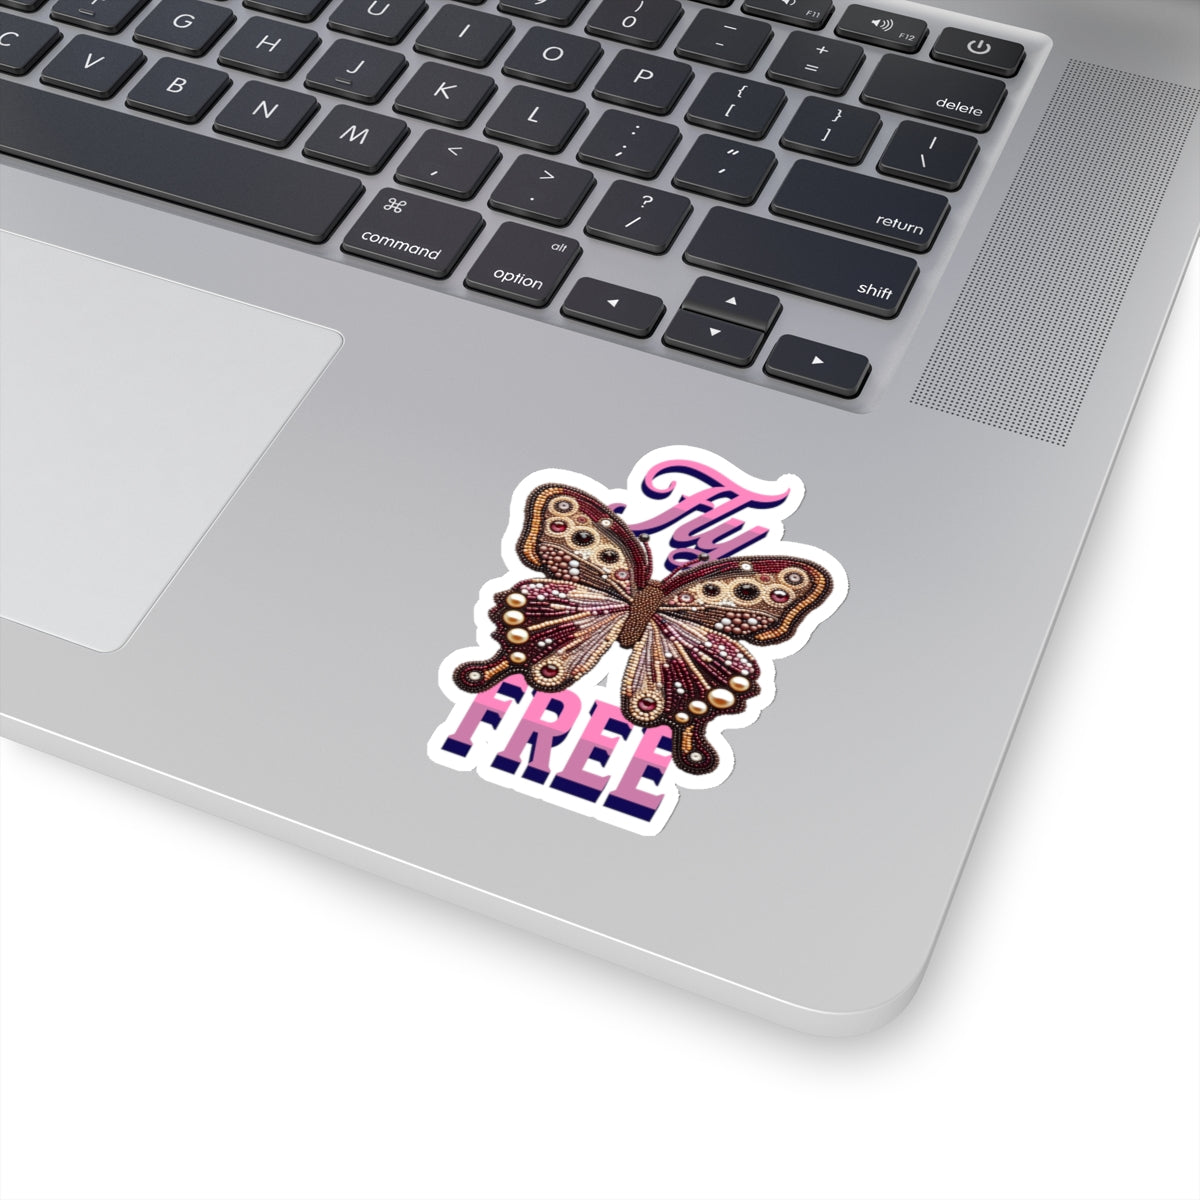 Fly Free Retro Butterfly Sticker - Kiss-Cut Sticker